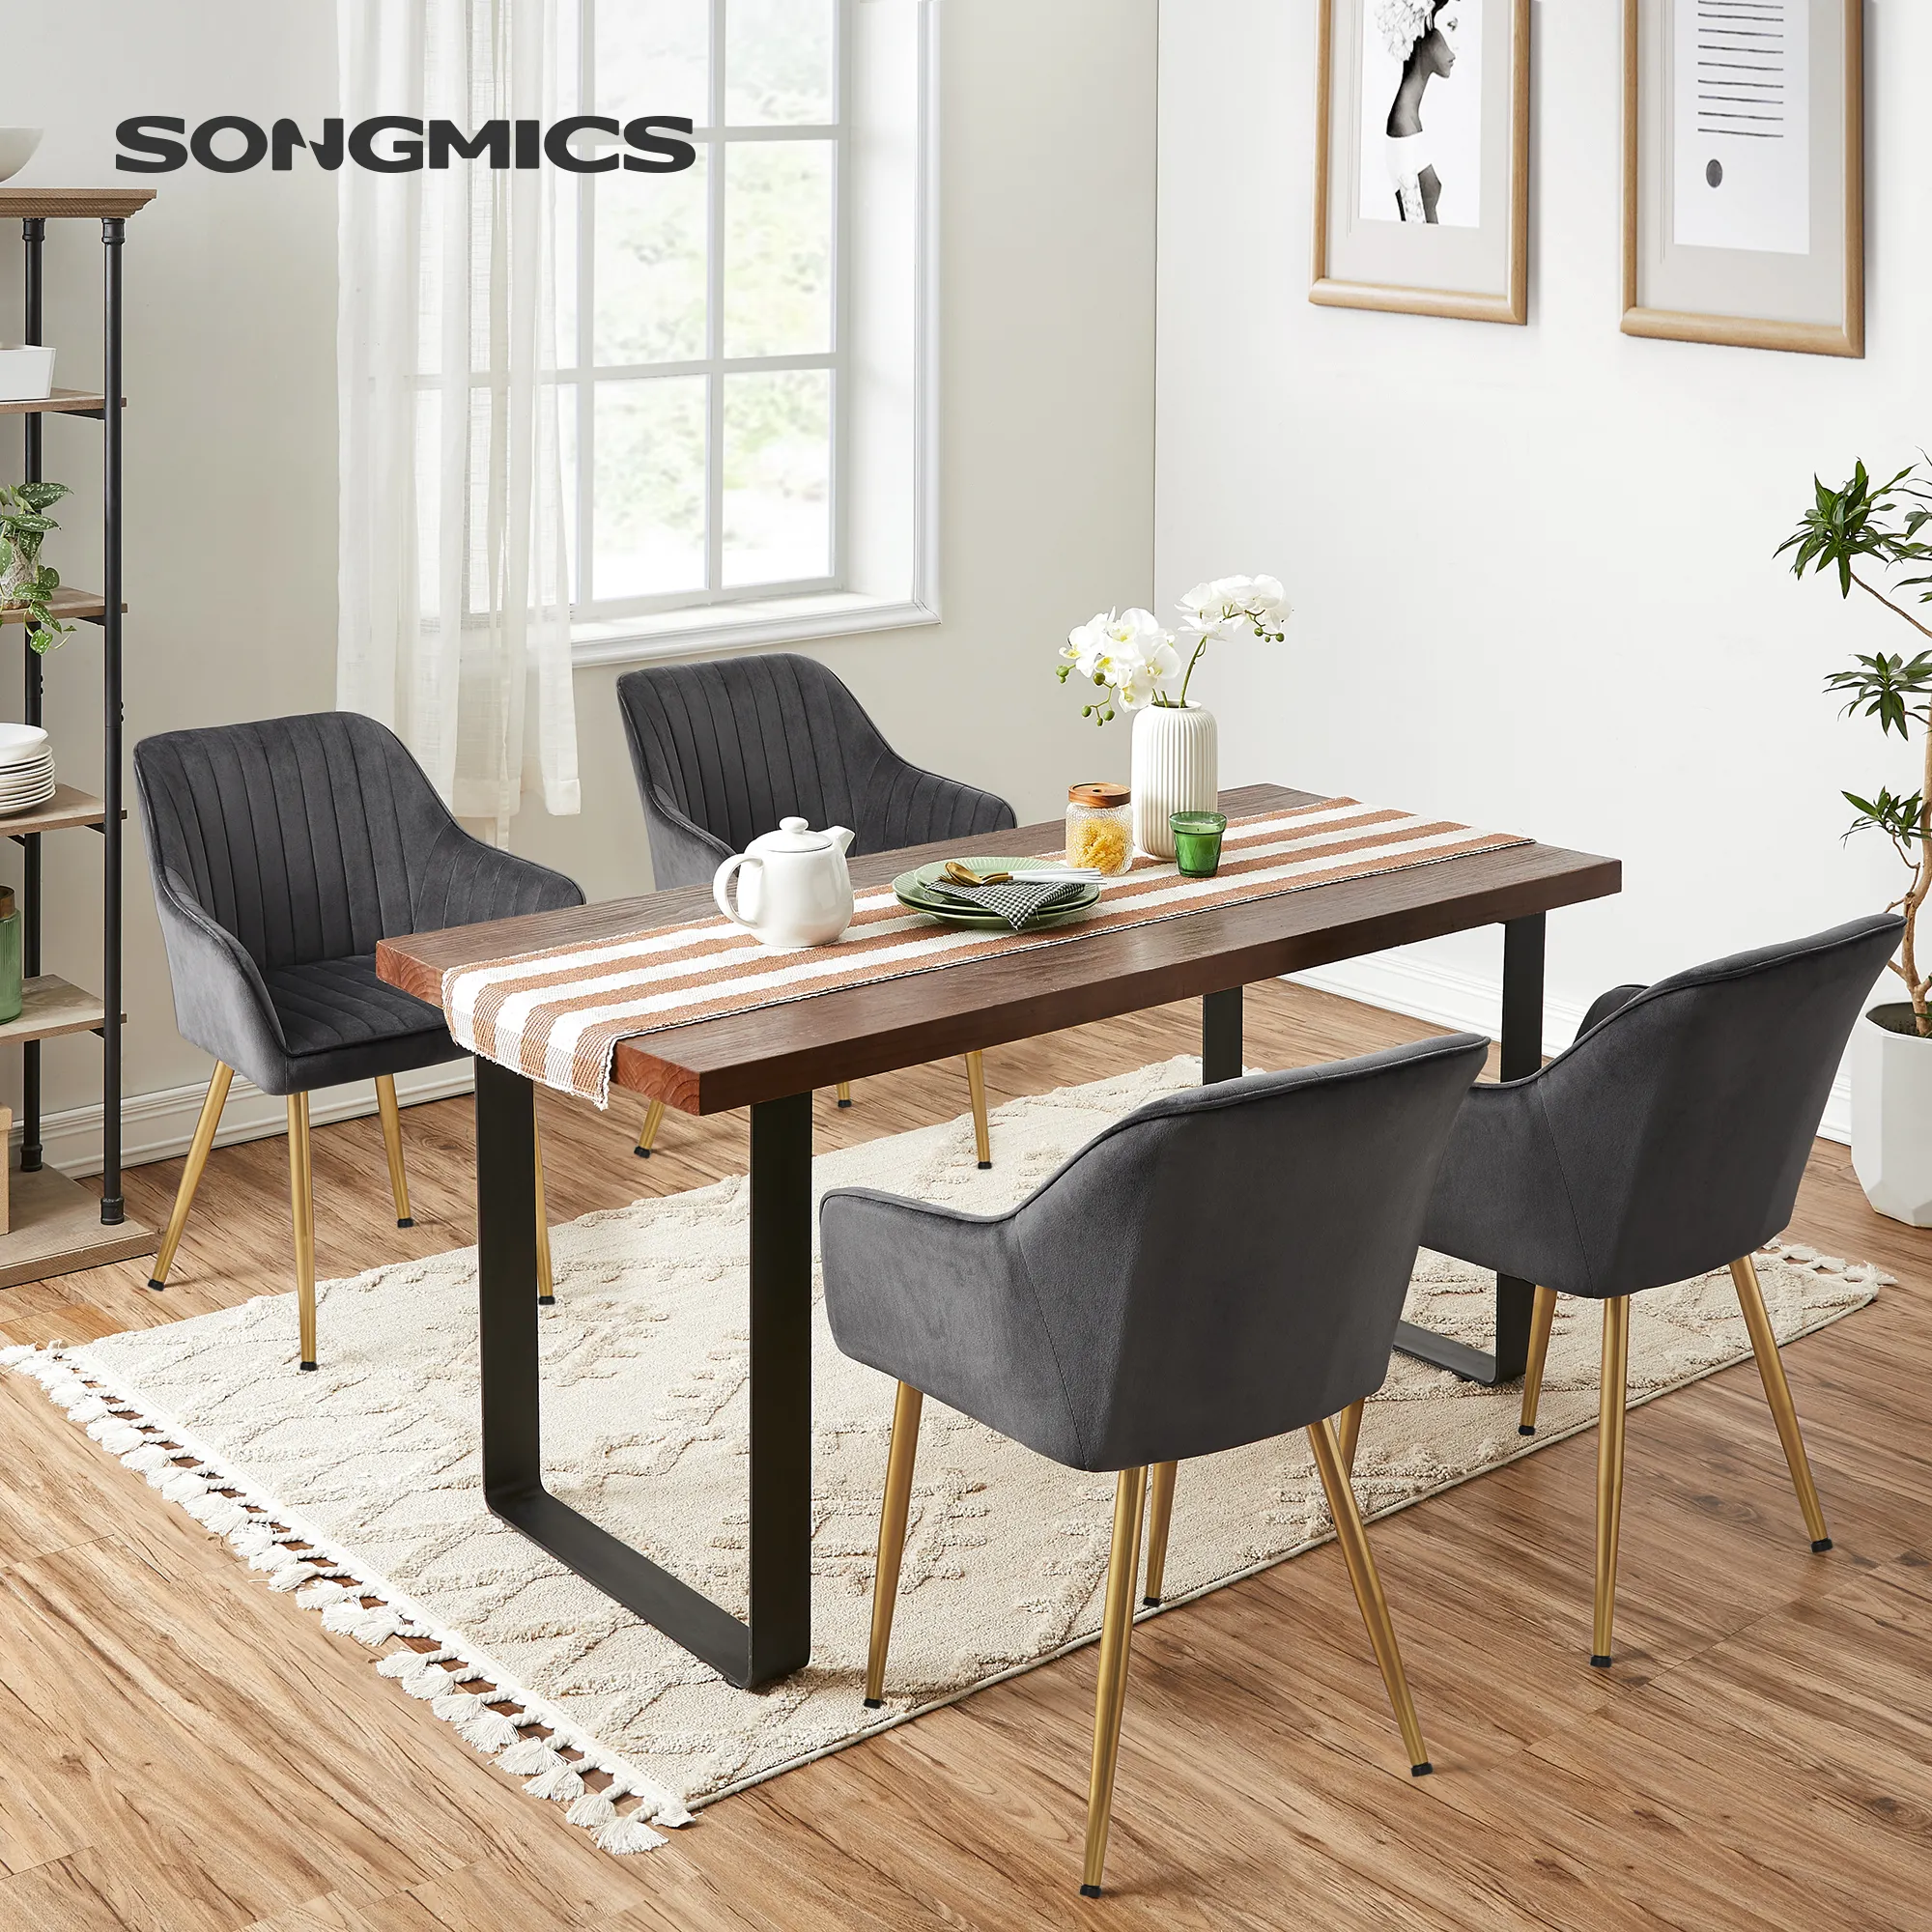 SONGMICSモダンラグジュアリーデザインダイニングルームチェア家具卸売布張りベルベットダイニングチェア、メタルレッグゴールド